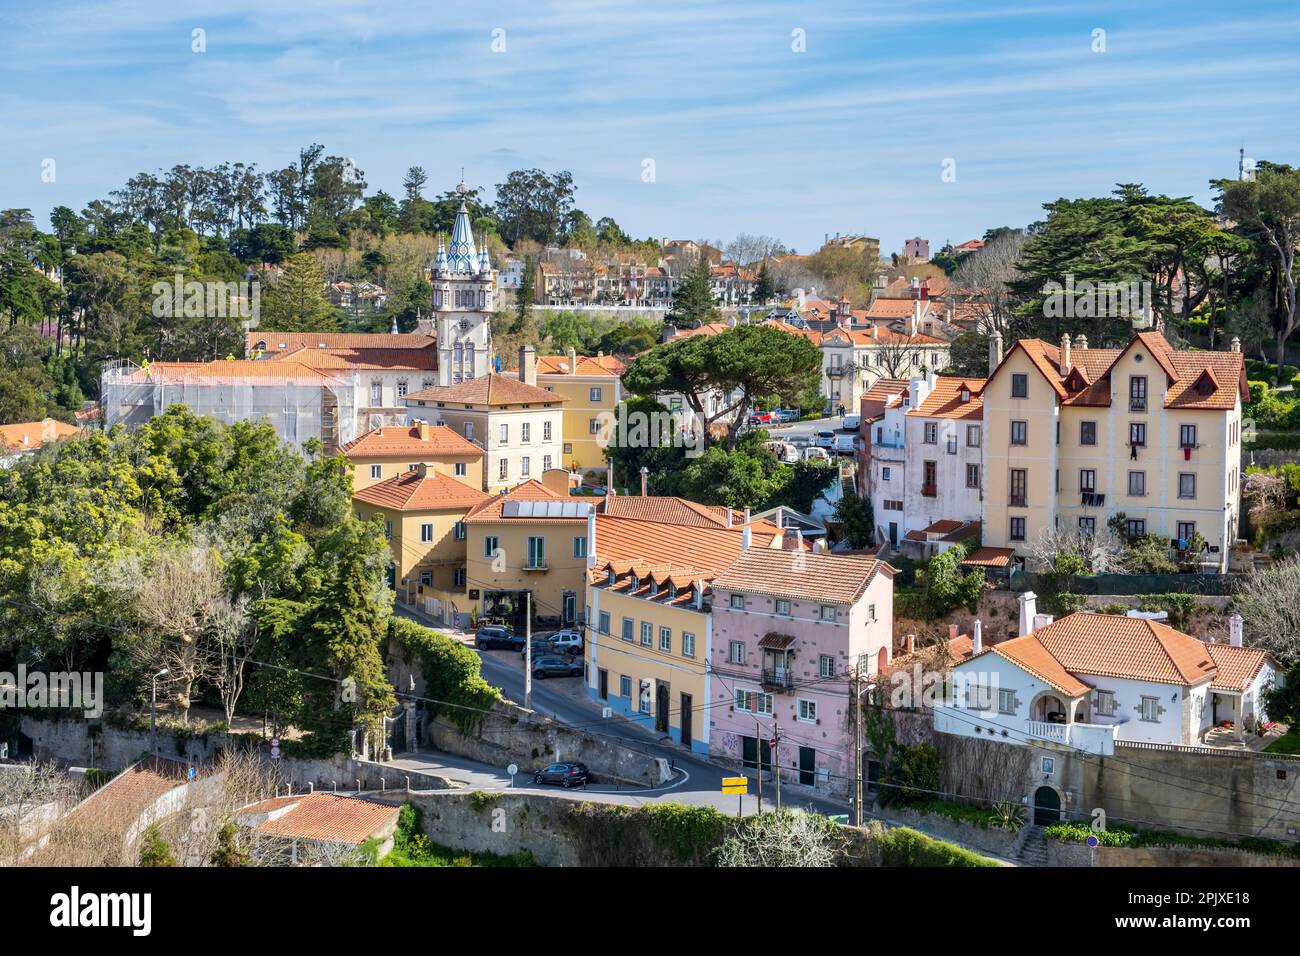 Die historische Stadt Sintra, in den Ausläufern des Sintra-Gebirges Portugals, in der Nähe der Hauptstadt Lissabon. Stockfoto